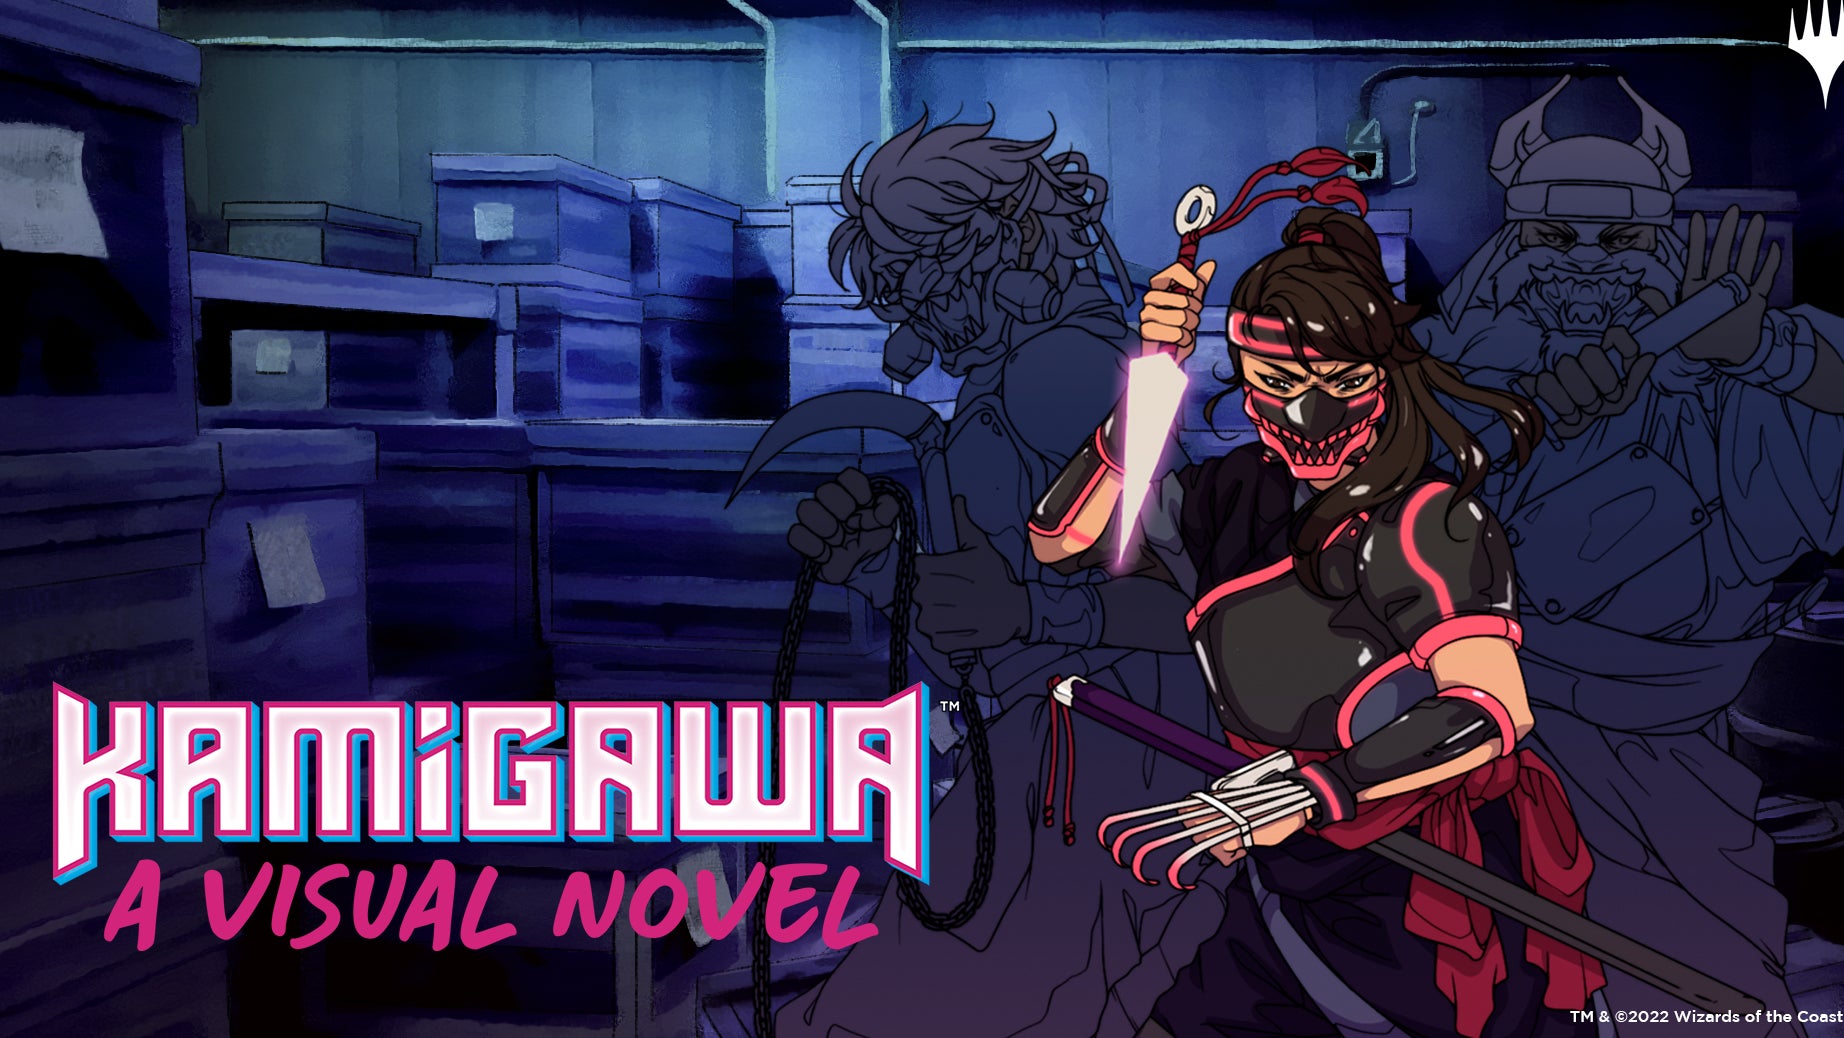 Imagen para Magic: The Gathering nos presenta el mundo de su expansión de samuráis cyberpunk a través de una novela visual